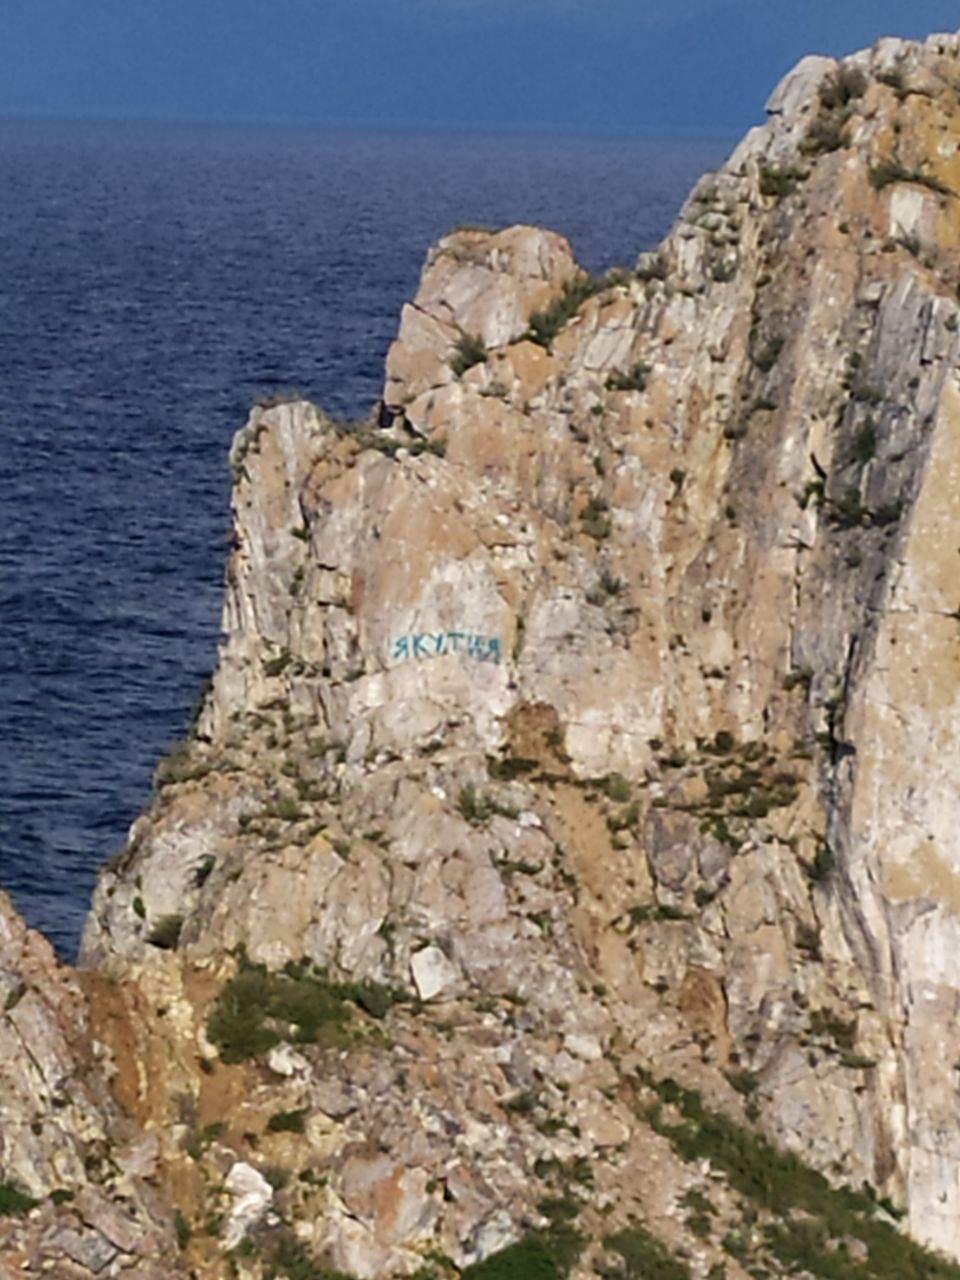 Байкальский гид возмущена надписью "Якутия" на скале Шаманка